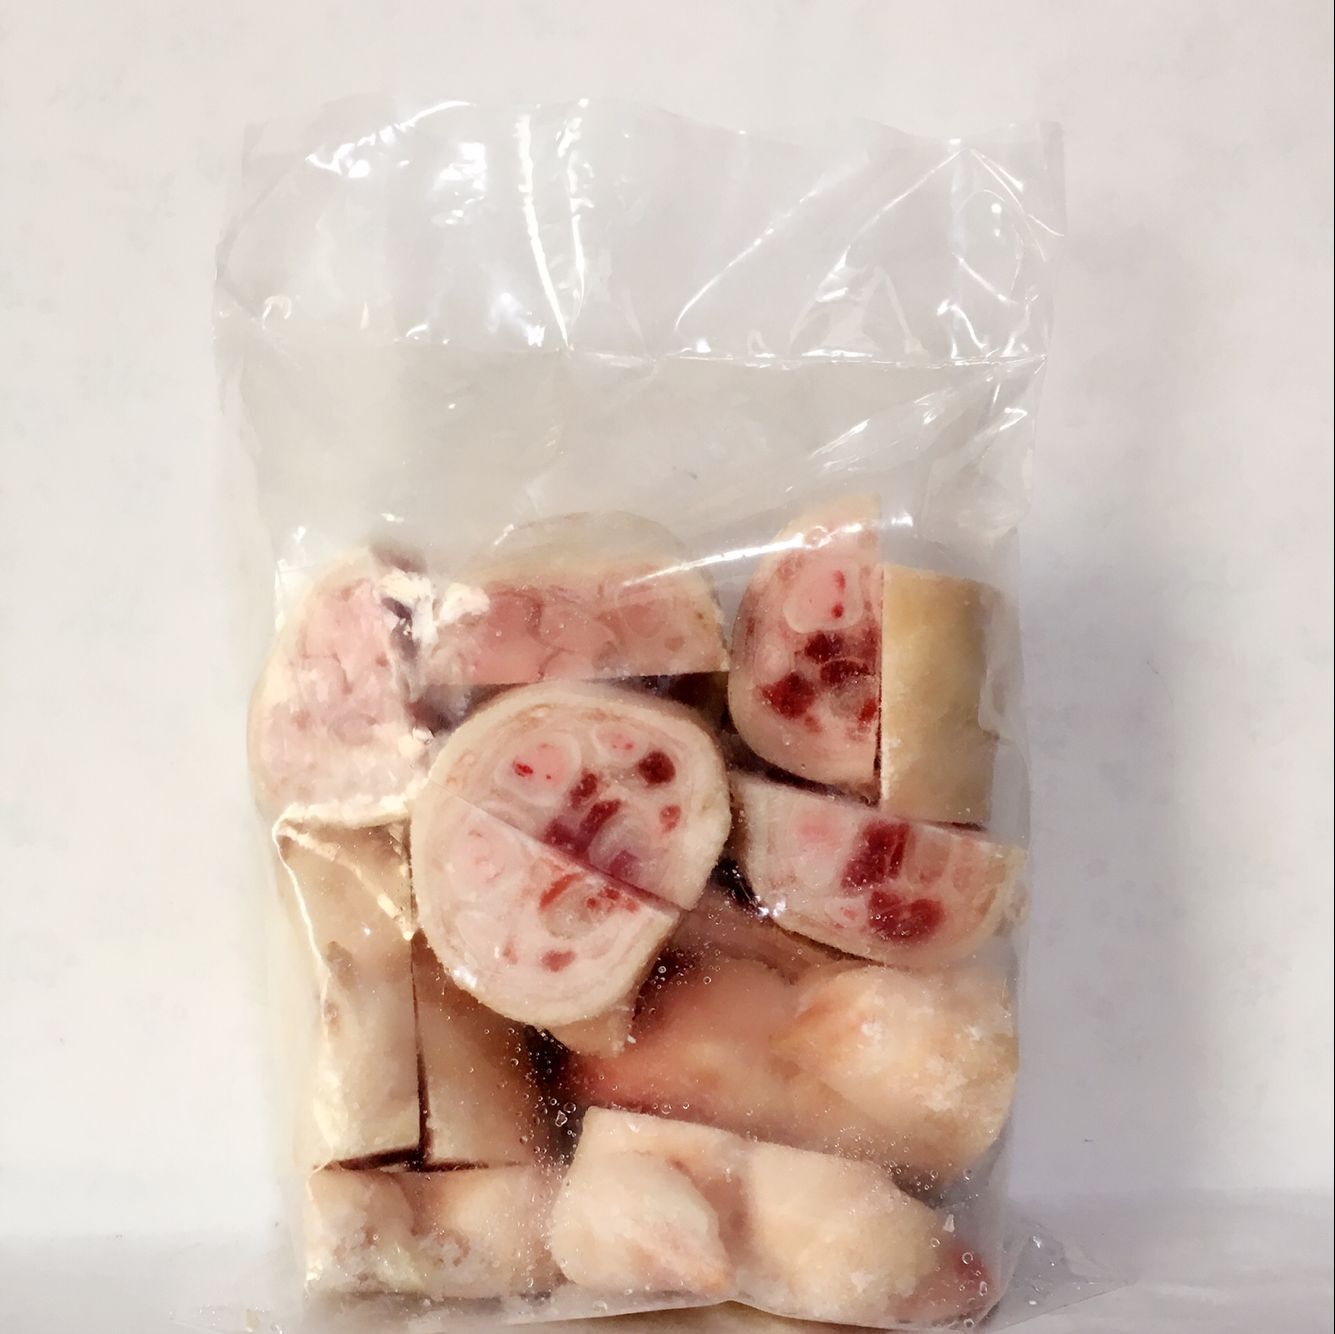 冷凍切豚足 （豚蹄） 1kg 日本産 冷凍品